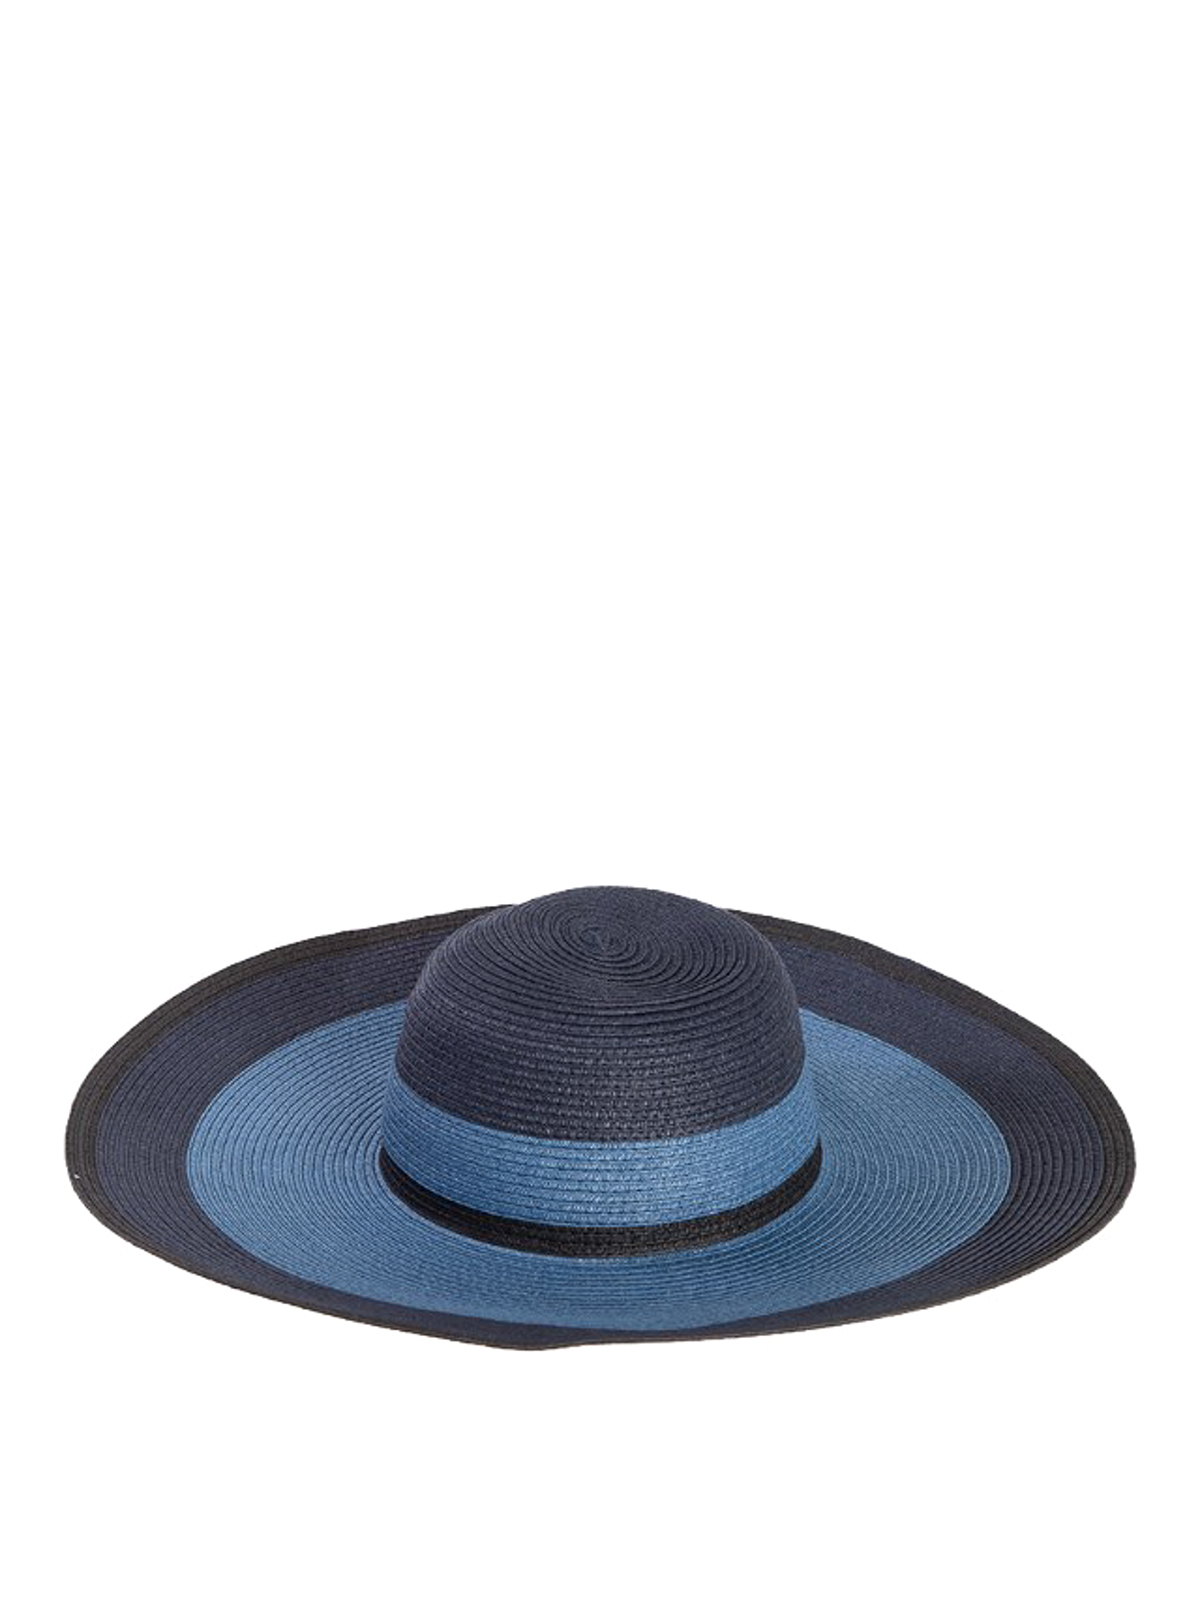 Paul Smith Striped Sun Hat In Blue